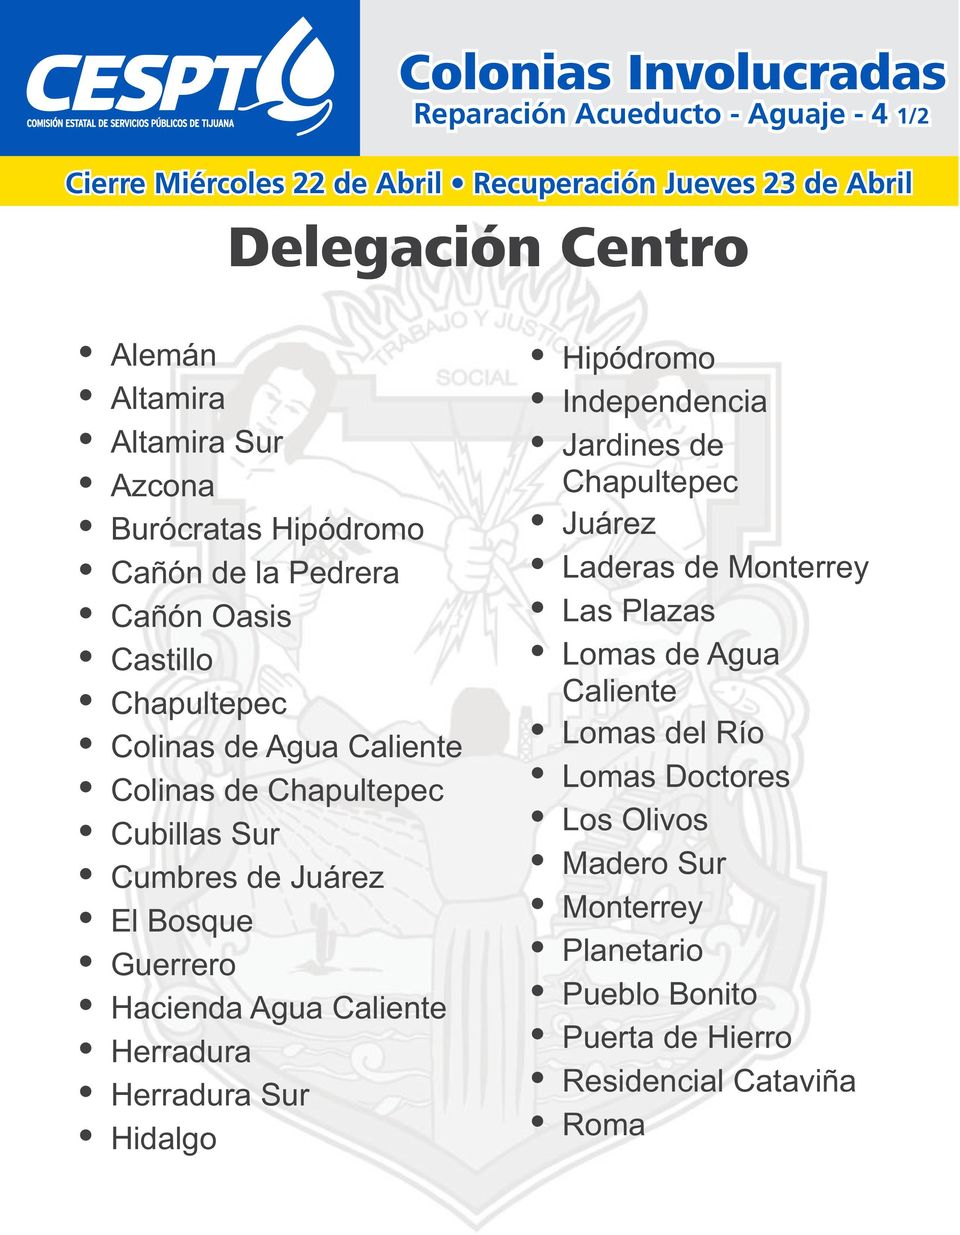 Herradura Sur Ÿ Hidalgo Ÿ Hipódromo Ÿ Independencia Ÿ Jardines de Chapultepec Ÿ Juárez Ÿ Laderas de Monterrey Ÿ Las Plazas Ÿ Lomas de Agua Caliente